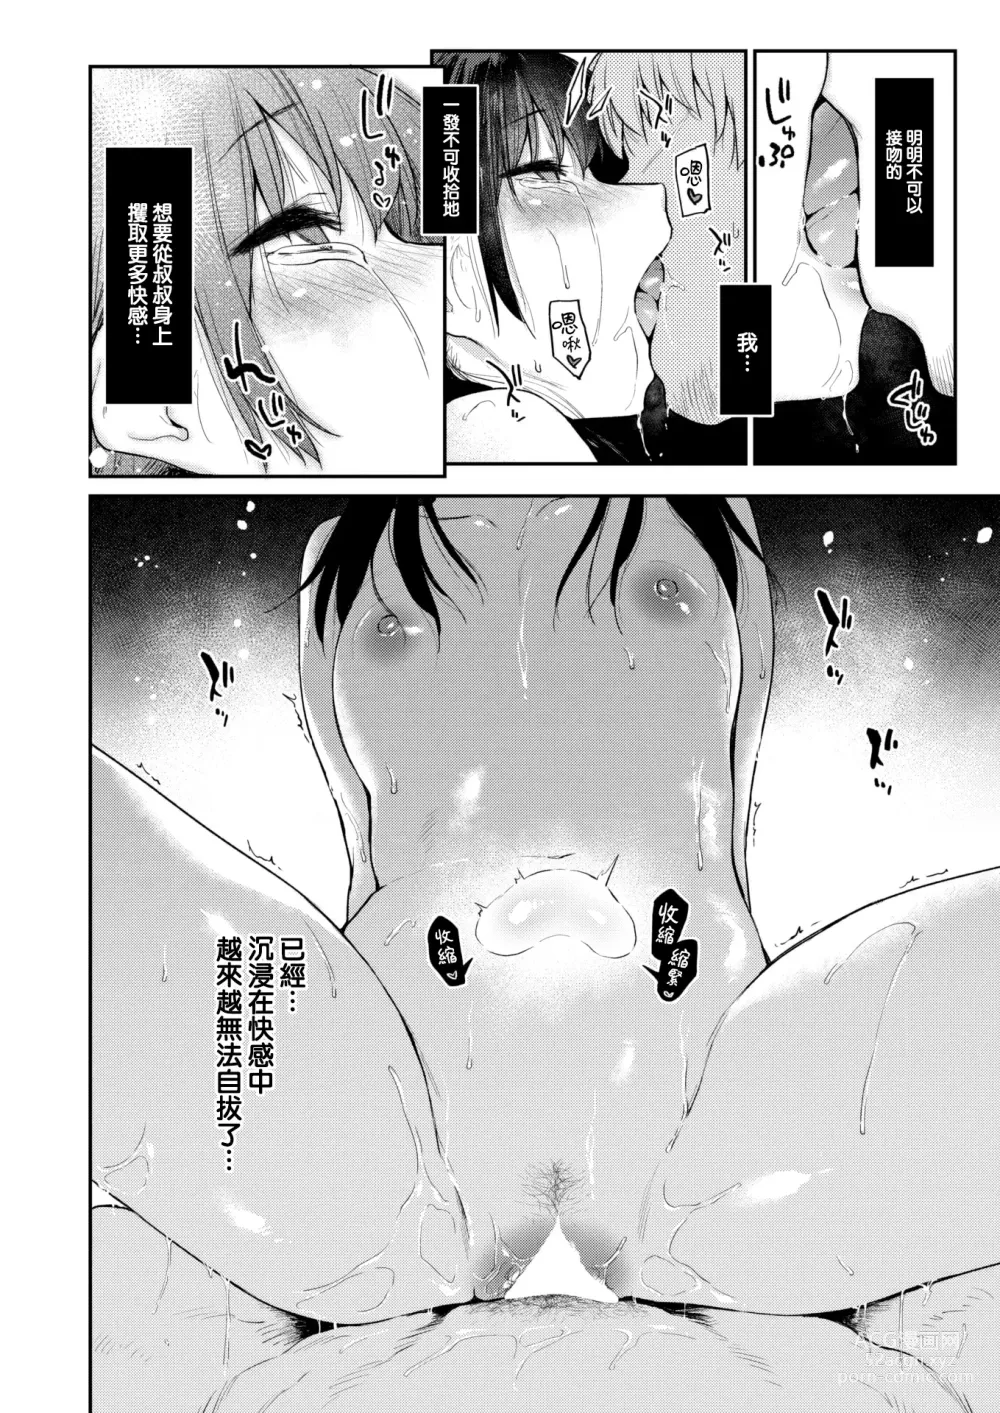 Page 25 of manga Okaeri - Im waiting for you....